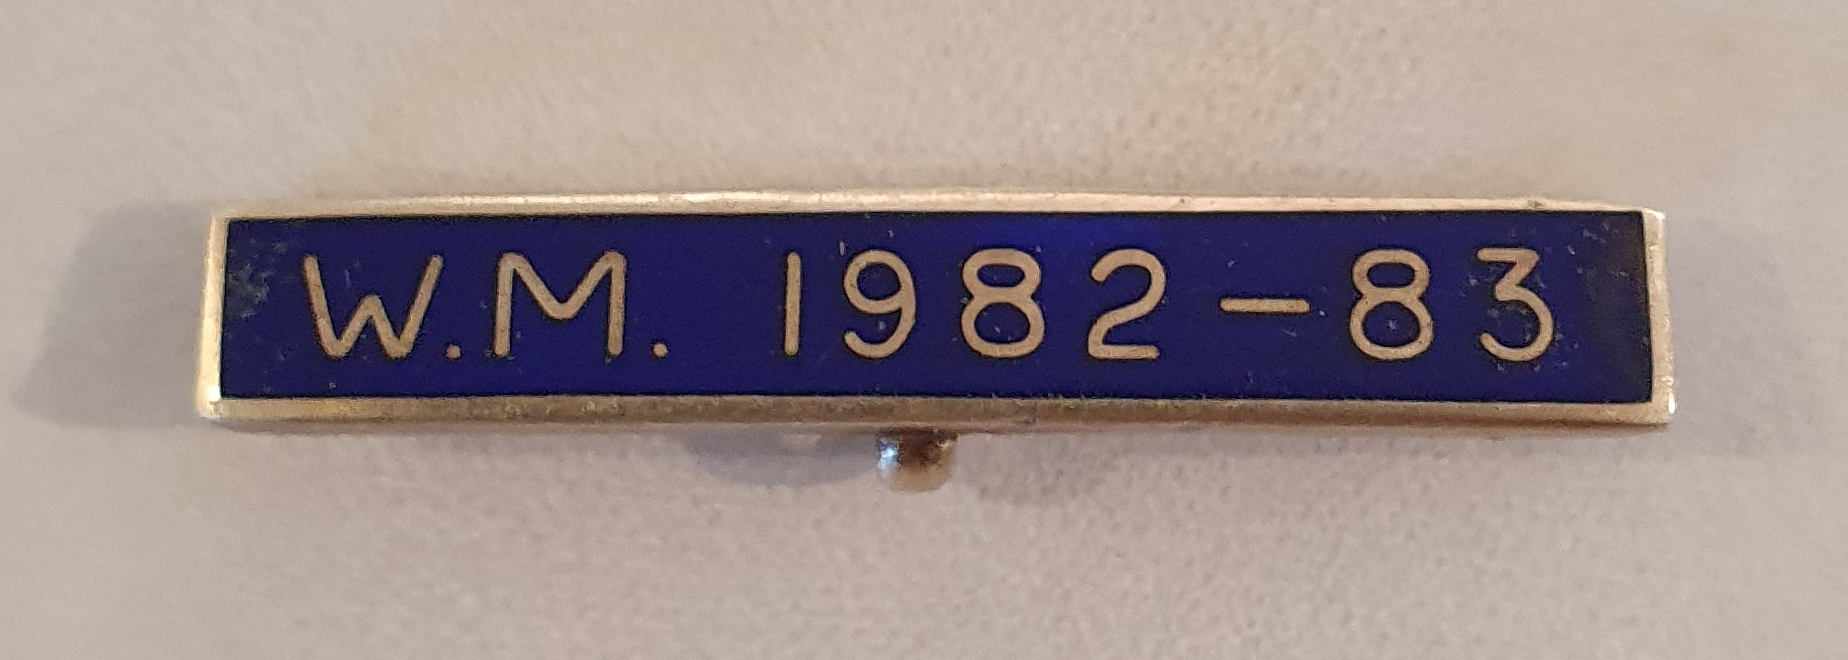 Breast Jewel Lower Date Bar - WM 1982-83 - Blue Enamel